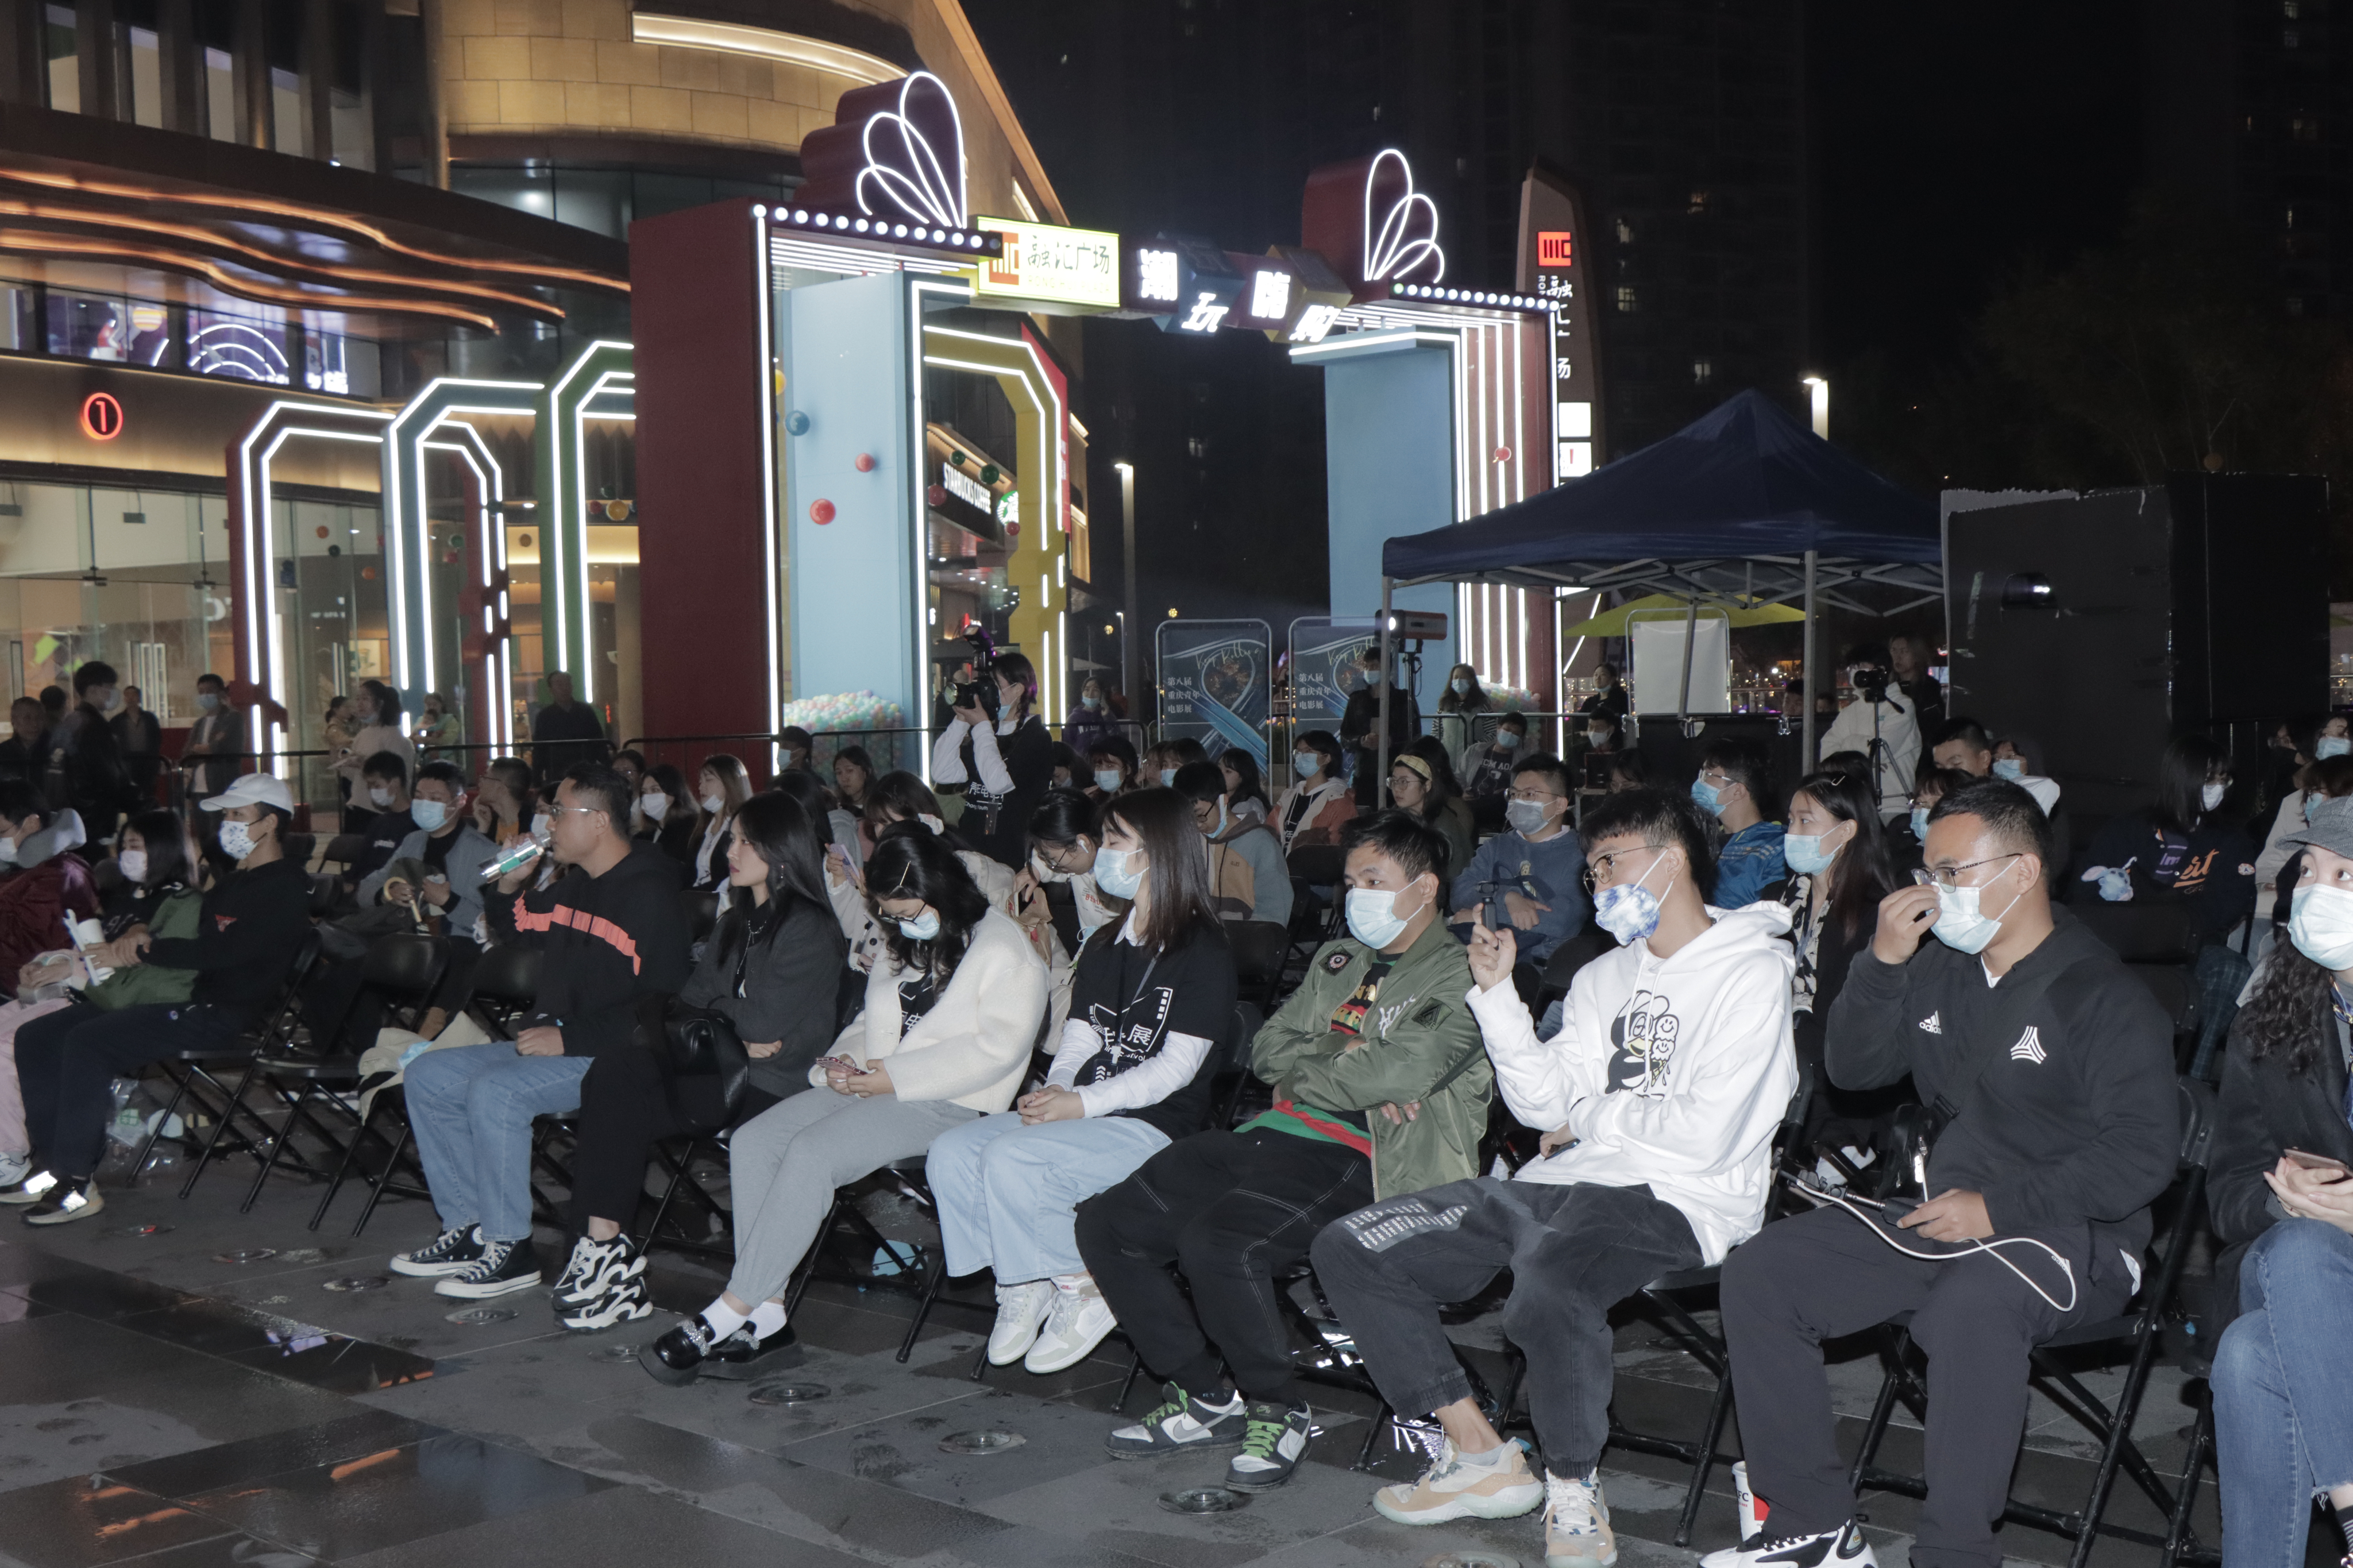 华硕e创星空电影院携手重庆青年电影展在山城的星空下传递爱